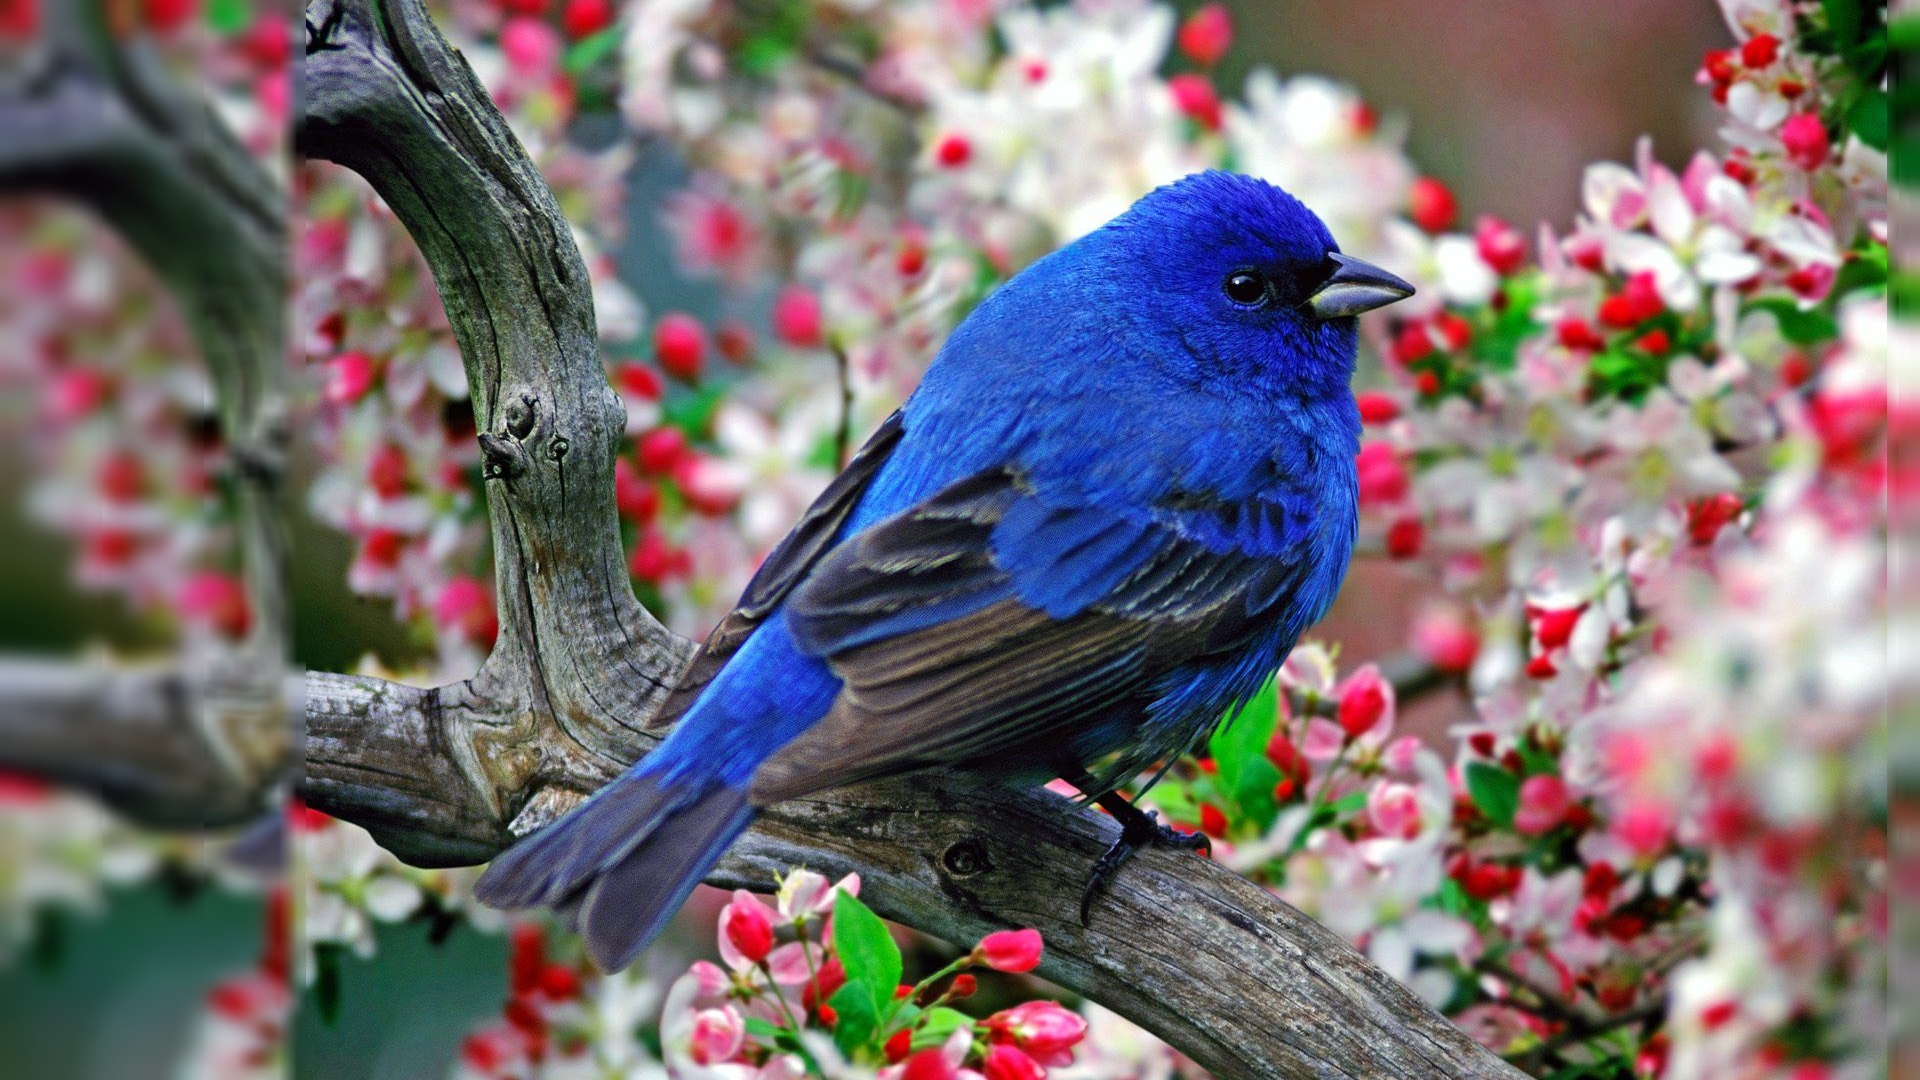  Birds Samsung Galaxy Note 3 Wallpaper Screensavers Backgrounds 6